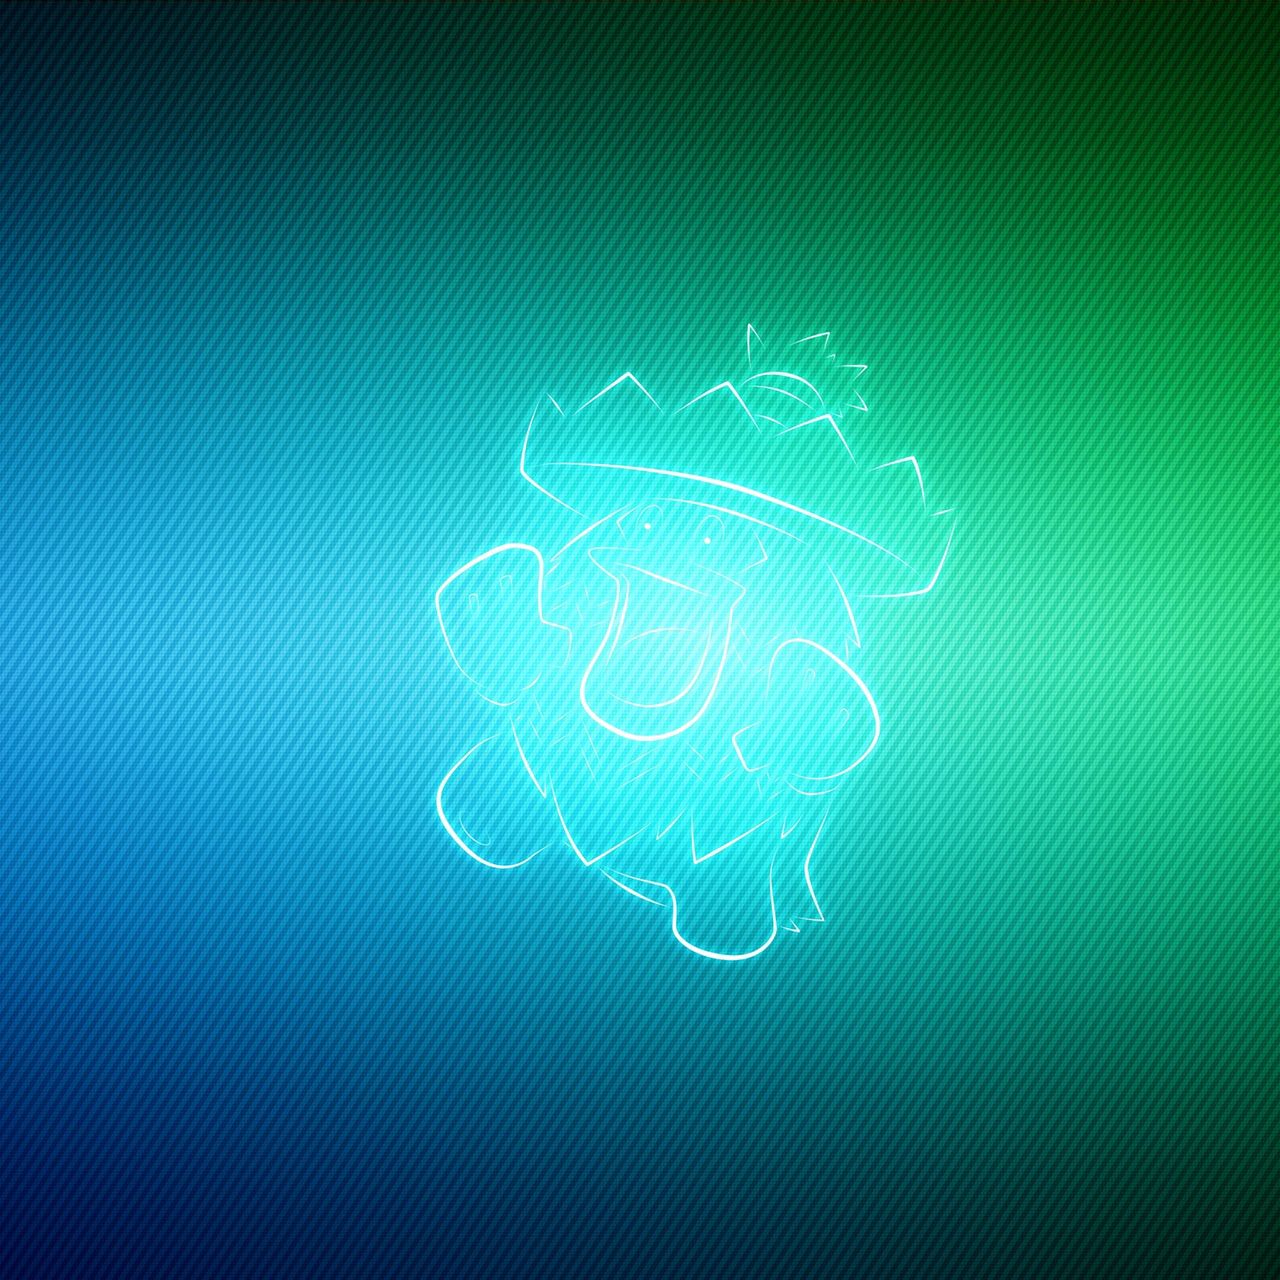 Download wallpaper 1280x1280 pokemon, bright, green, blue, ludicolo ipad,  ipad 2, ipad mini for parallax hd background